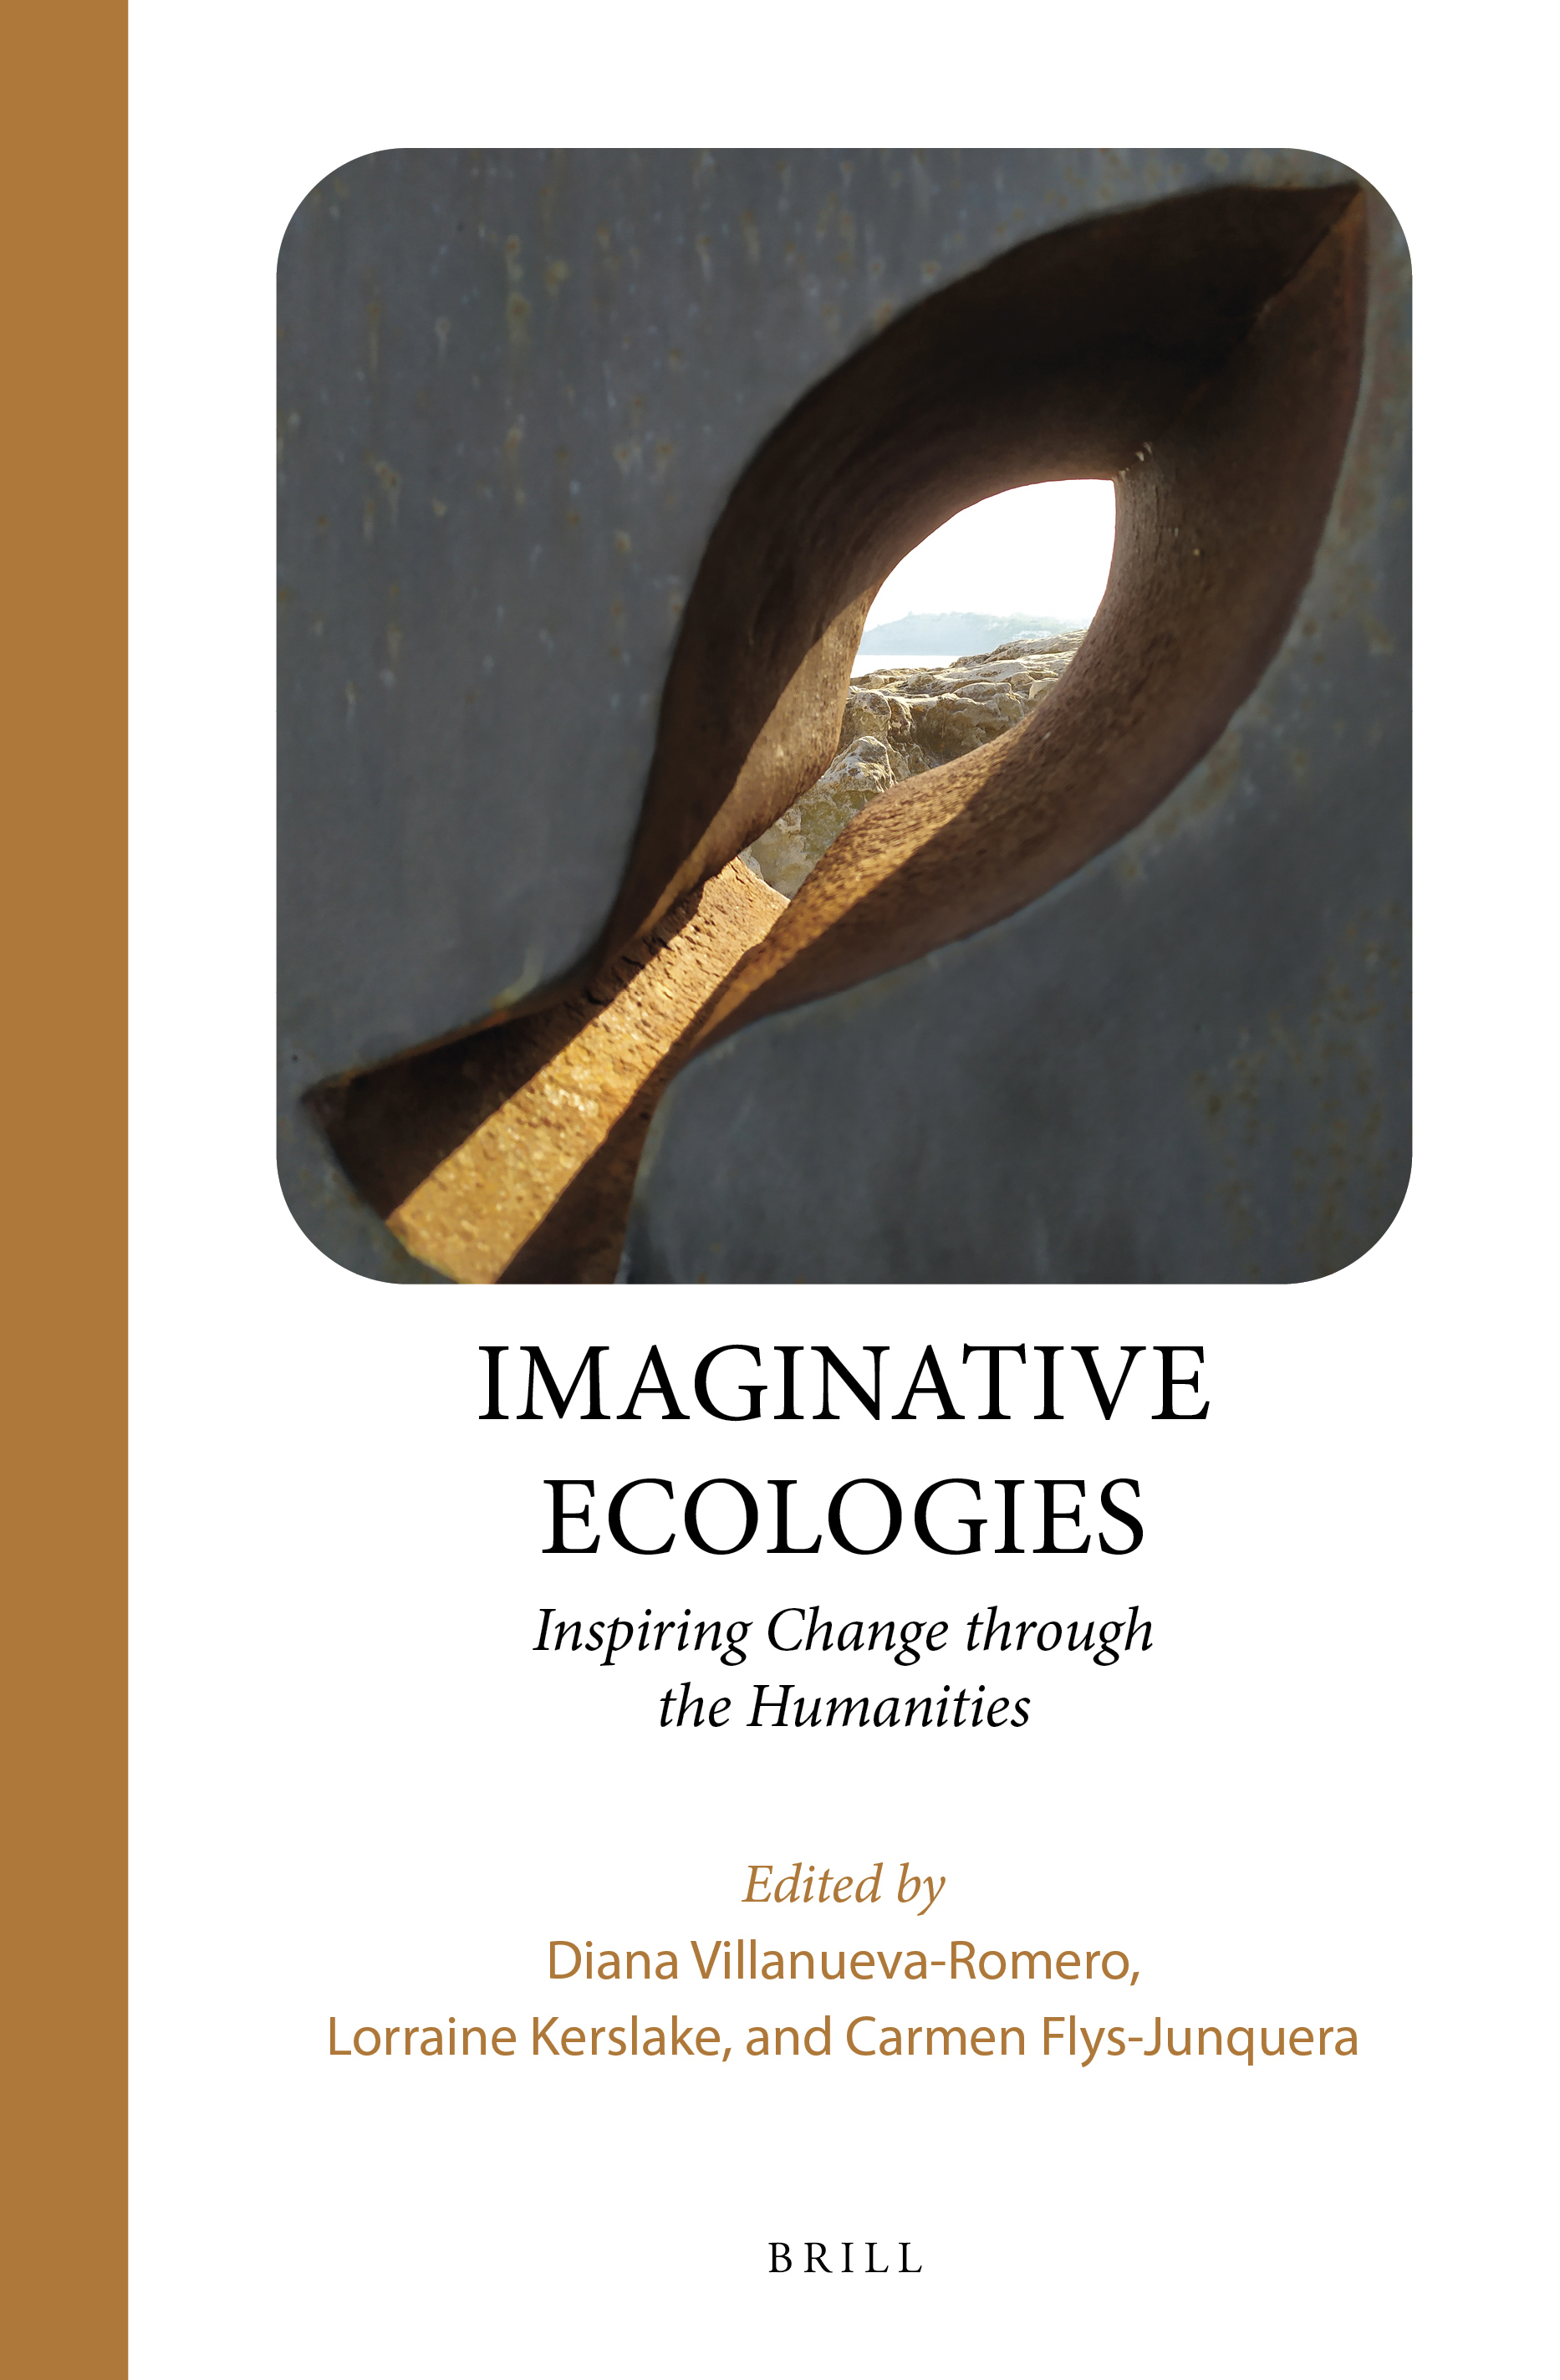 Imagen de portada del libro Imaginative ecologies